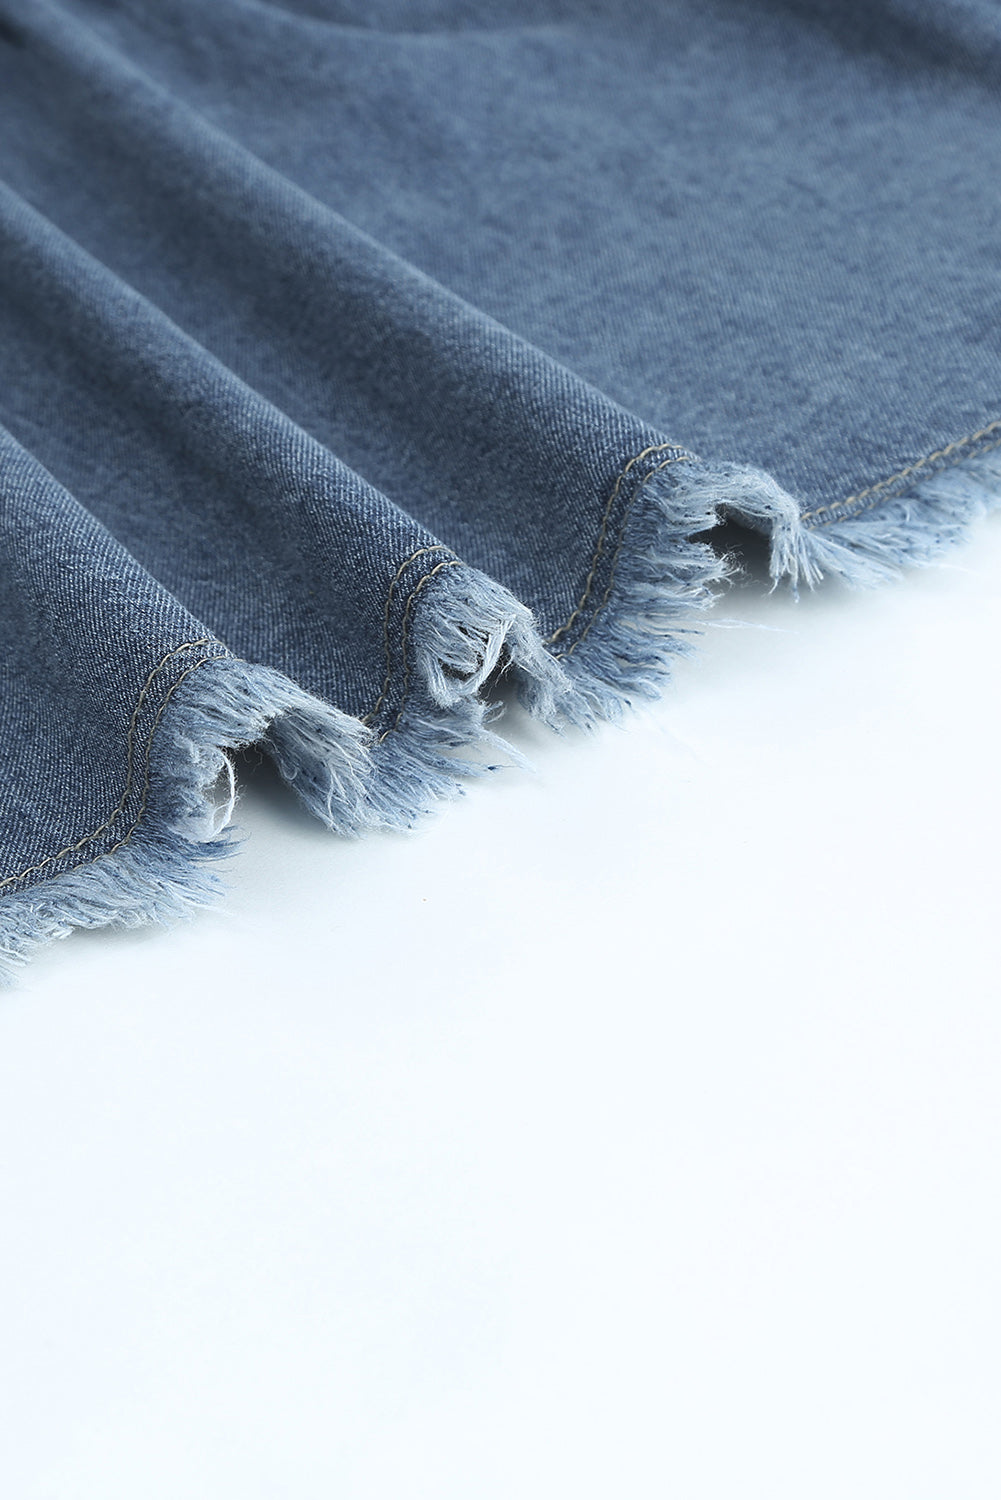 Robe en jean grise à manches courtes et poches effilochées boutonnées